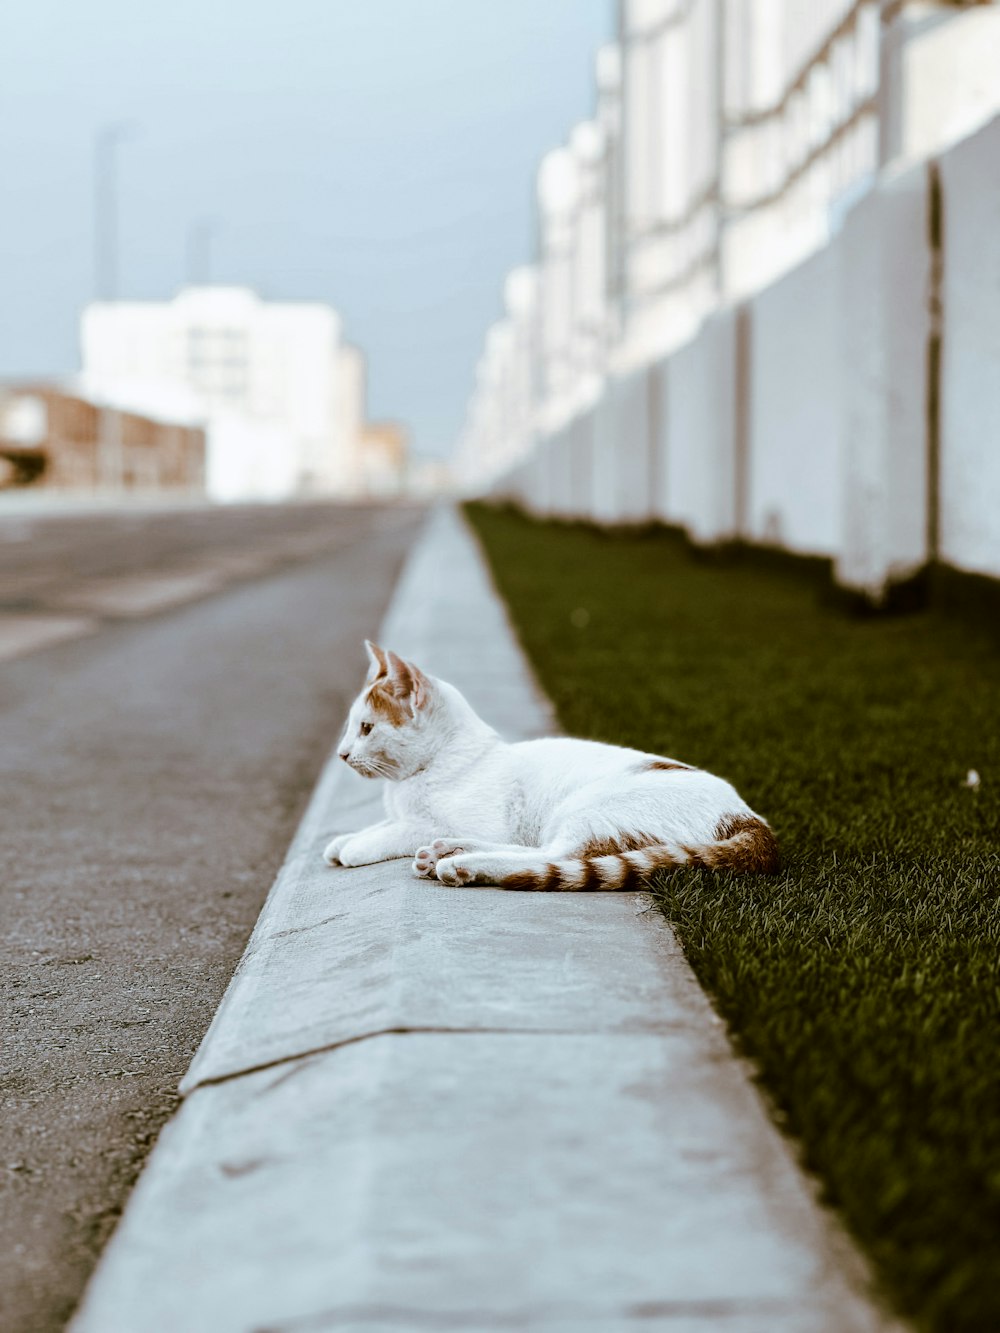 un chat allongé sur un trottoir